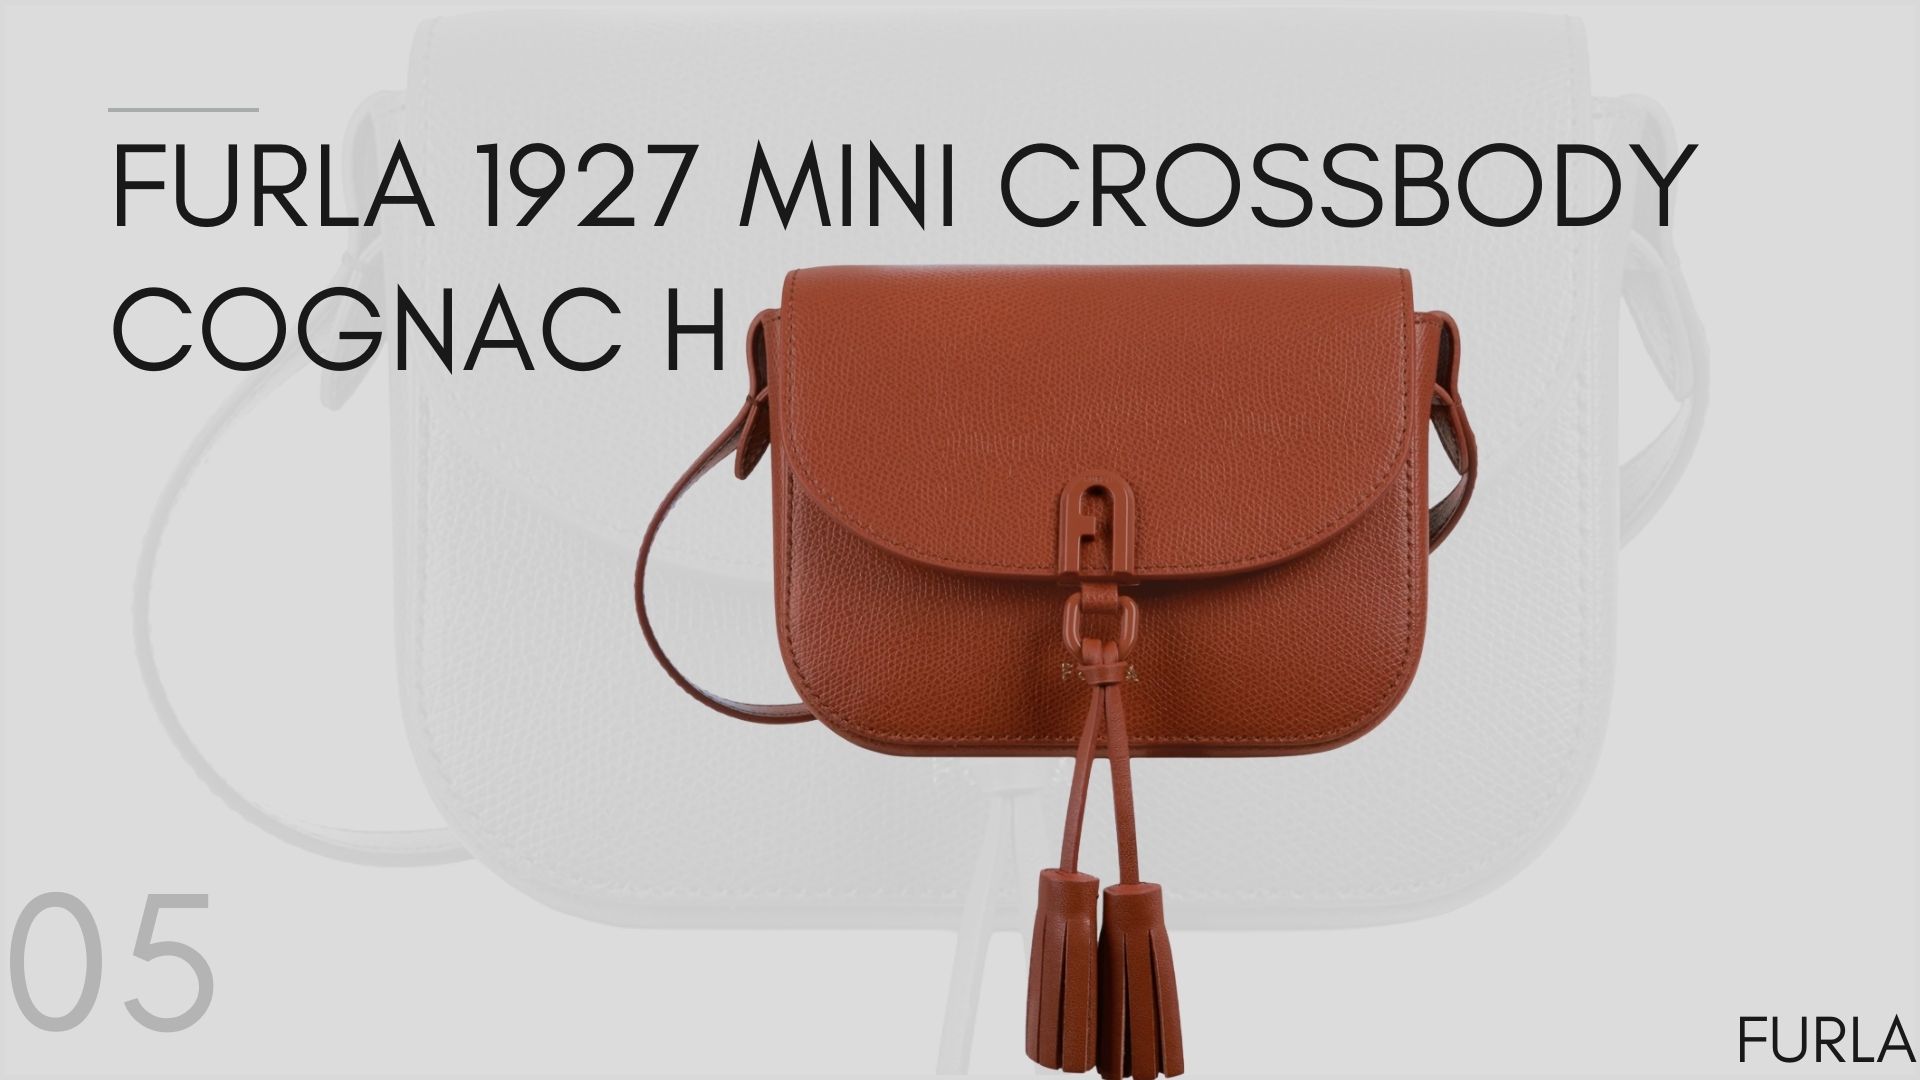 กระเป๋าราคาไม่เกิน 10000 บาท - Furla 1927 Mini Crossbody Cognac H